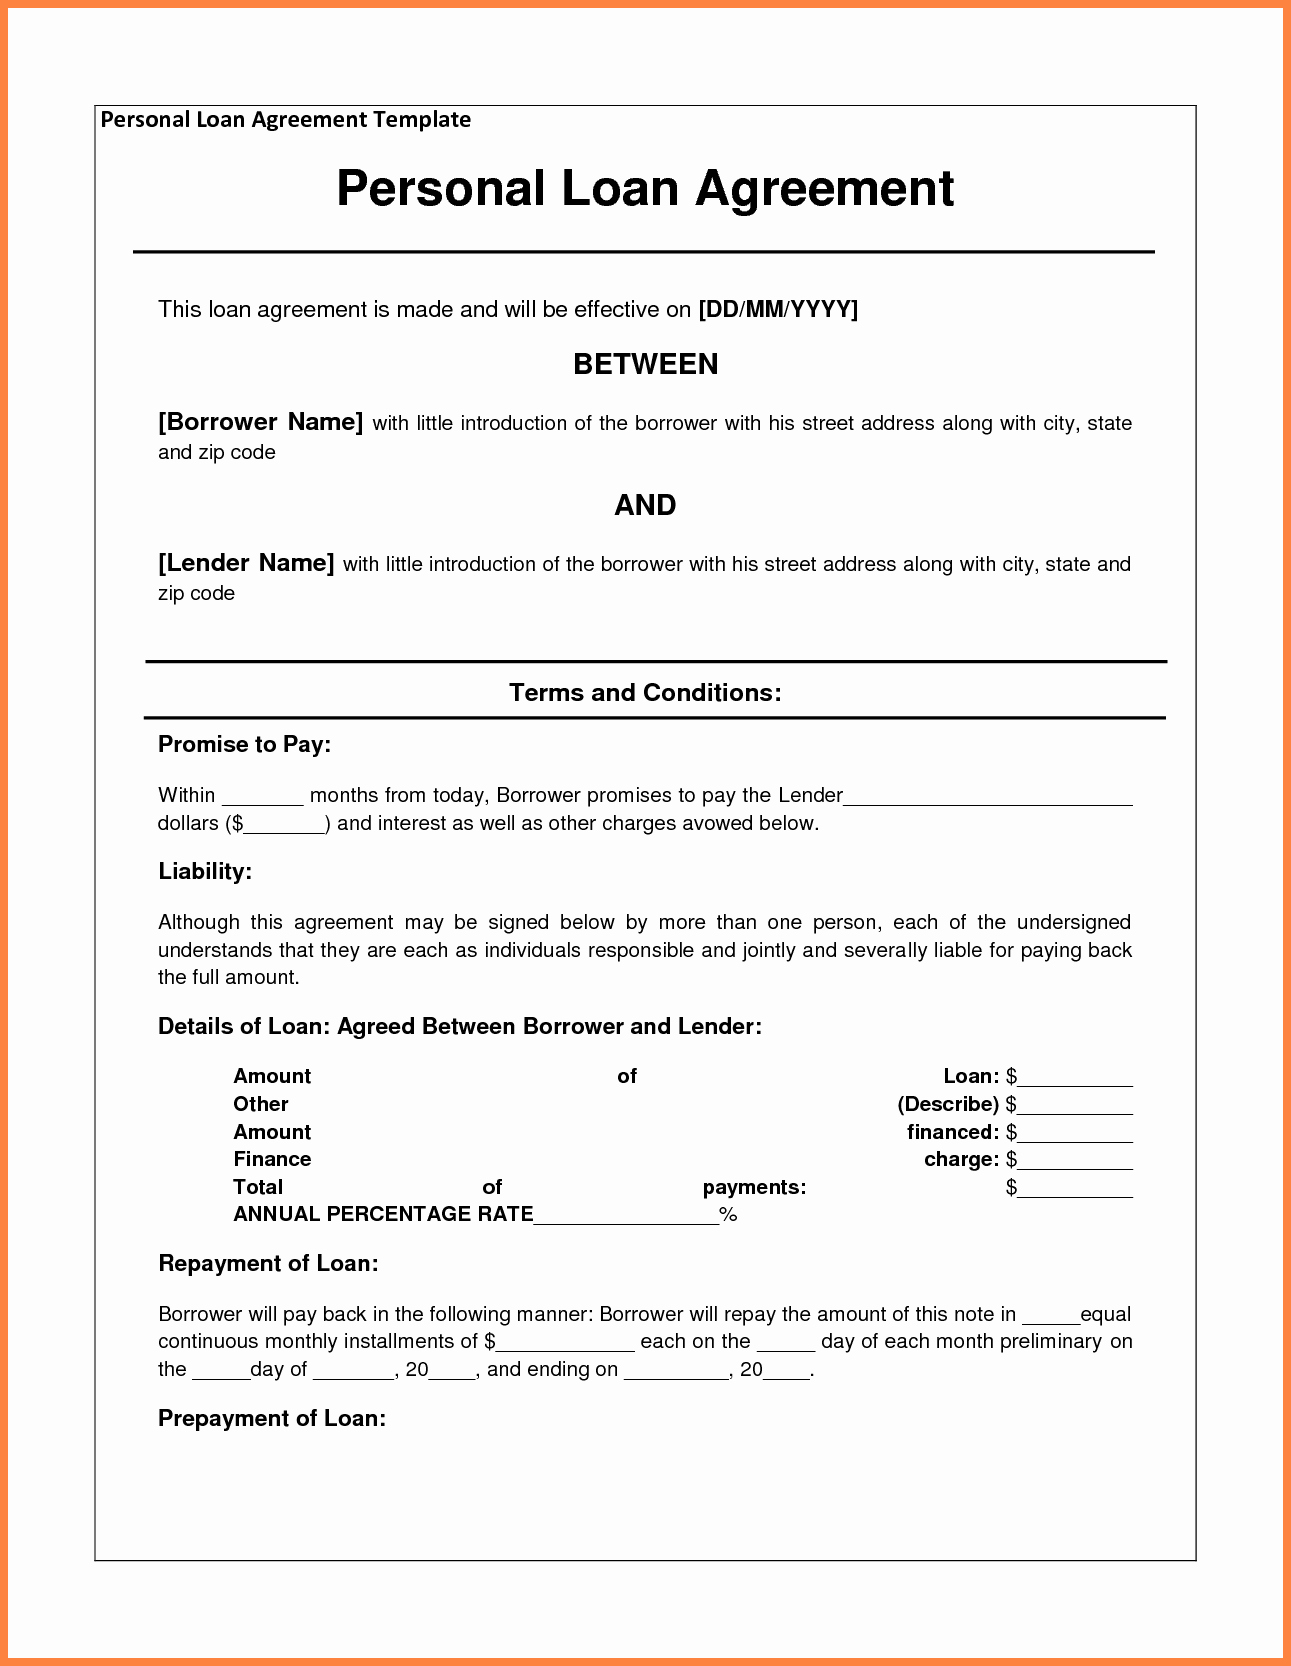 Loan Agreement Between Friends Template Luxury 4 Personal Loan Agreement Template Between Friends